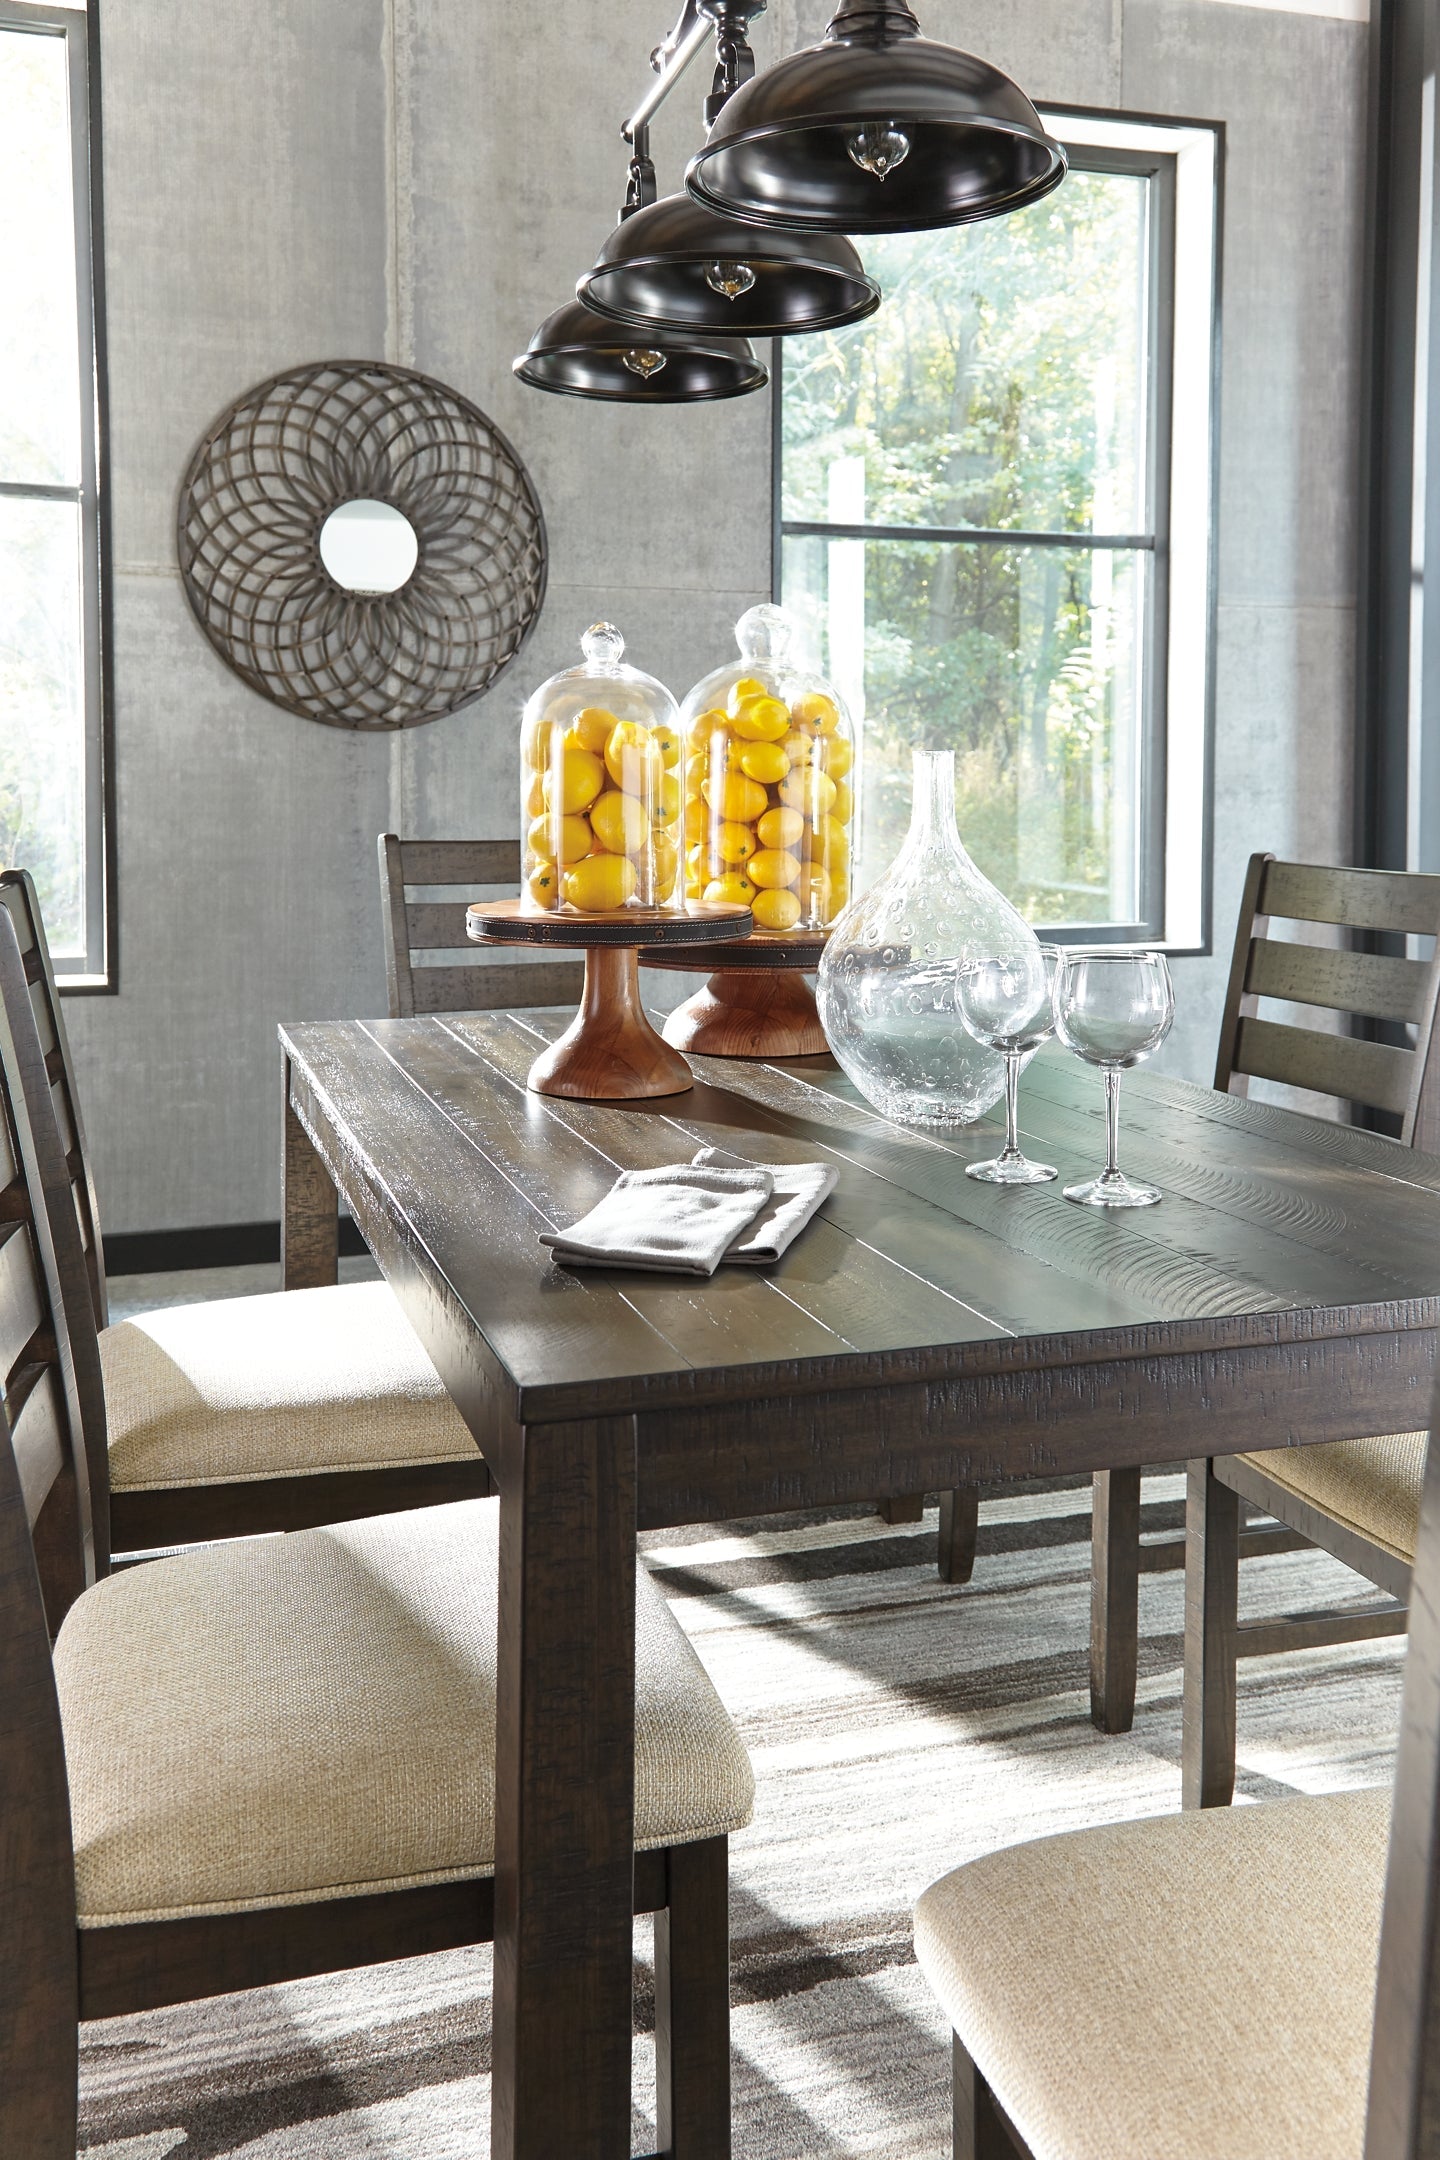 Rokane Dining Room Table Set (7/CN) Smyrna Furniture Outlet